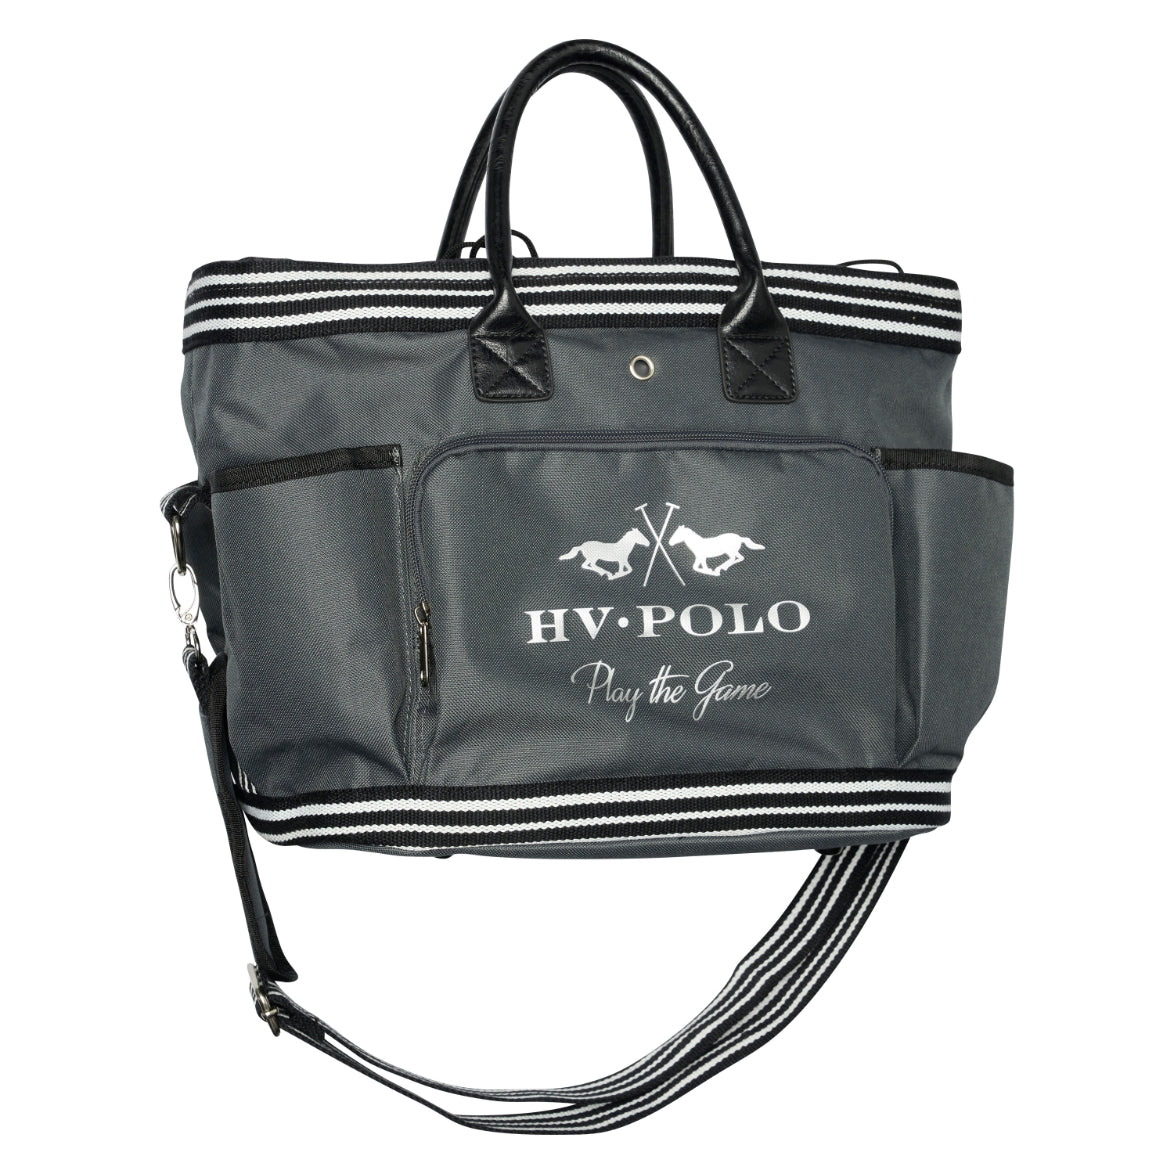 HV Polo Grooming Bag Jonie, stilren ryktväska i flera färger